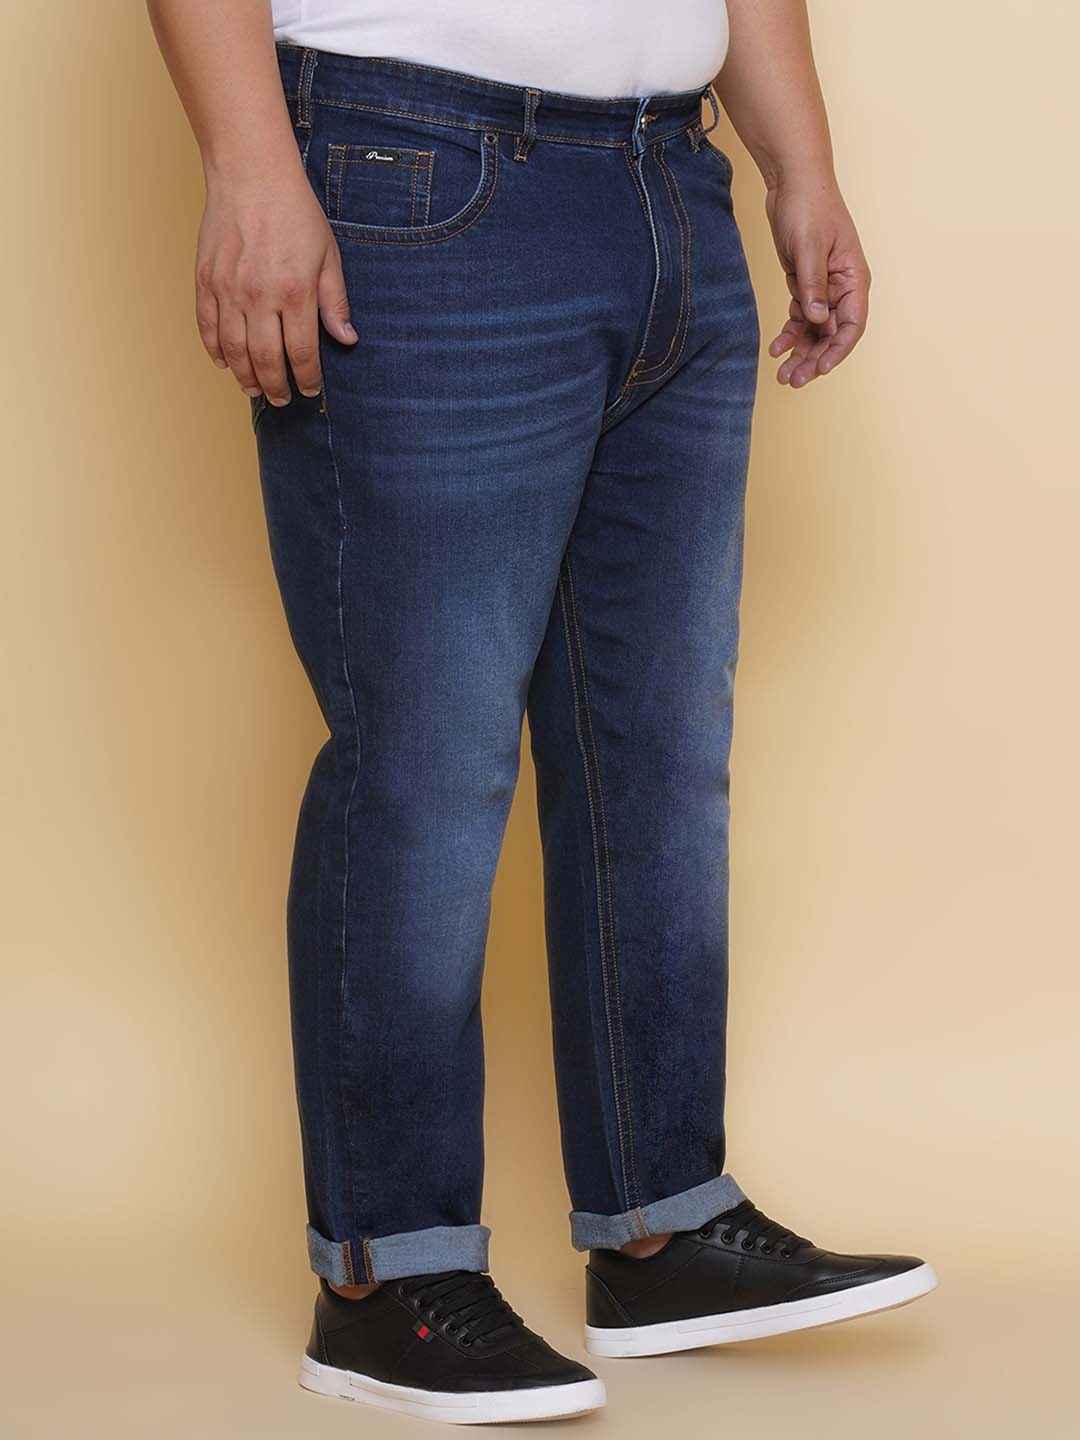 bottomwear/jeans/PJPJ60102/pjpj60102-3.jpg